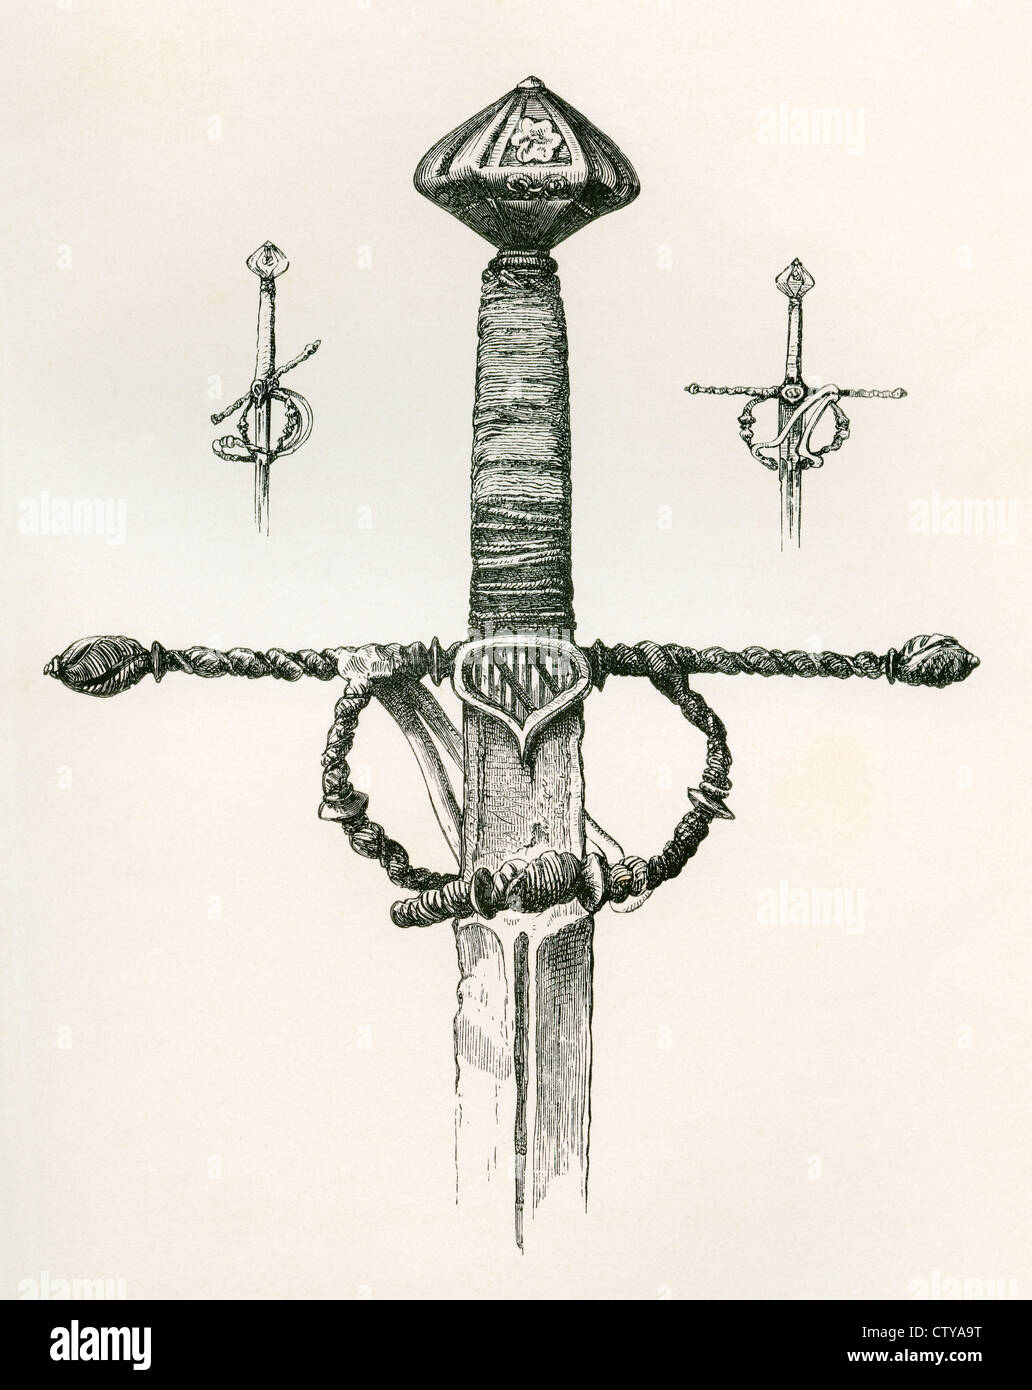 Caballero con la espada de doble filo, hoja cruceta trenzados en espiral y el dedo índice y el pulgar, guardia fecha A.D. 1455. Foto de stock